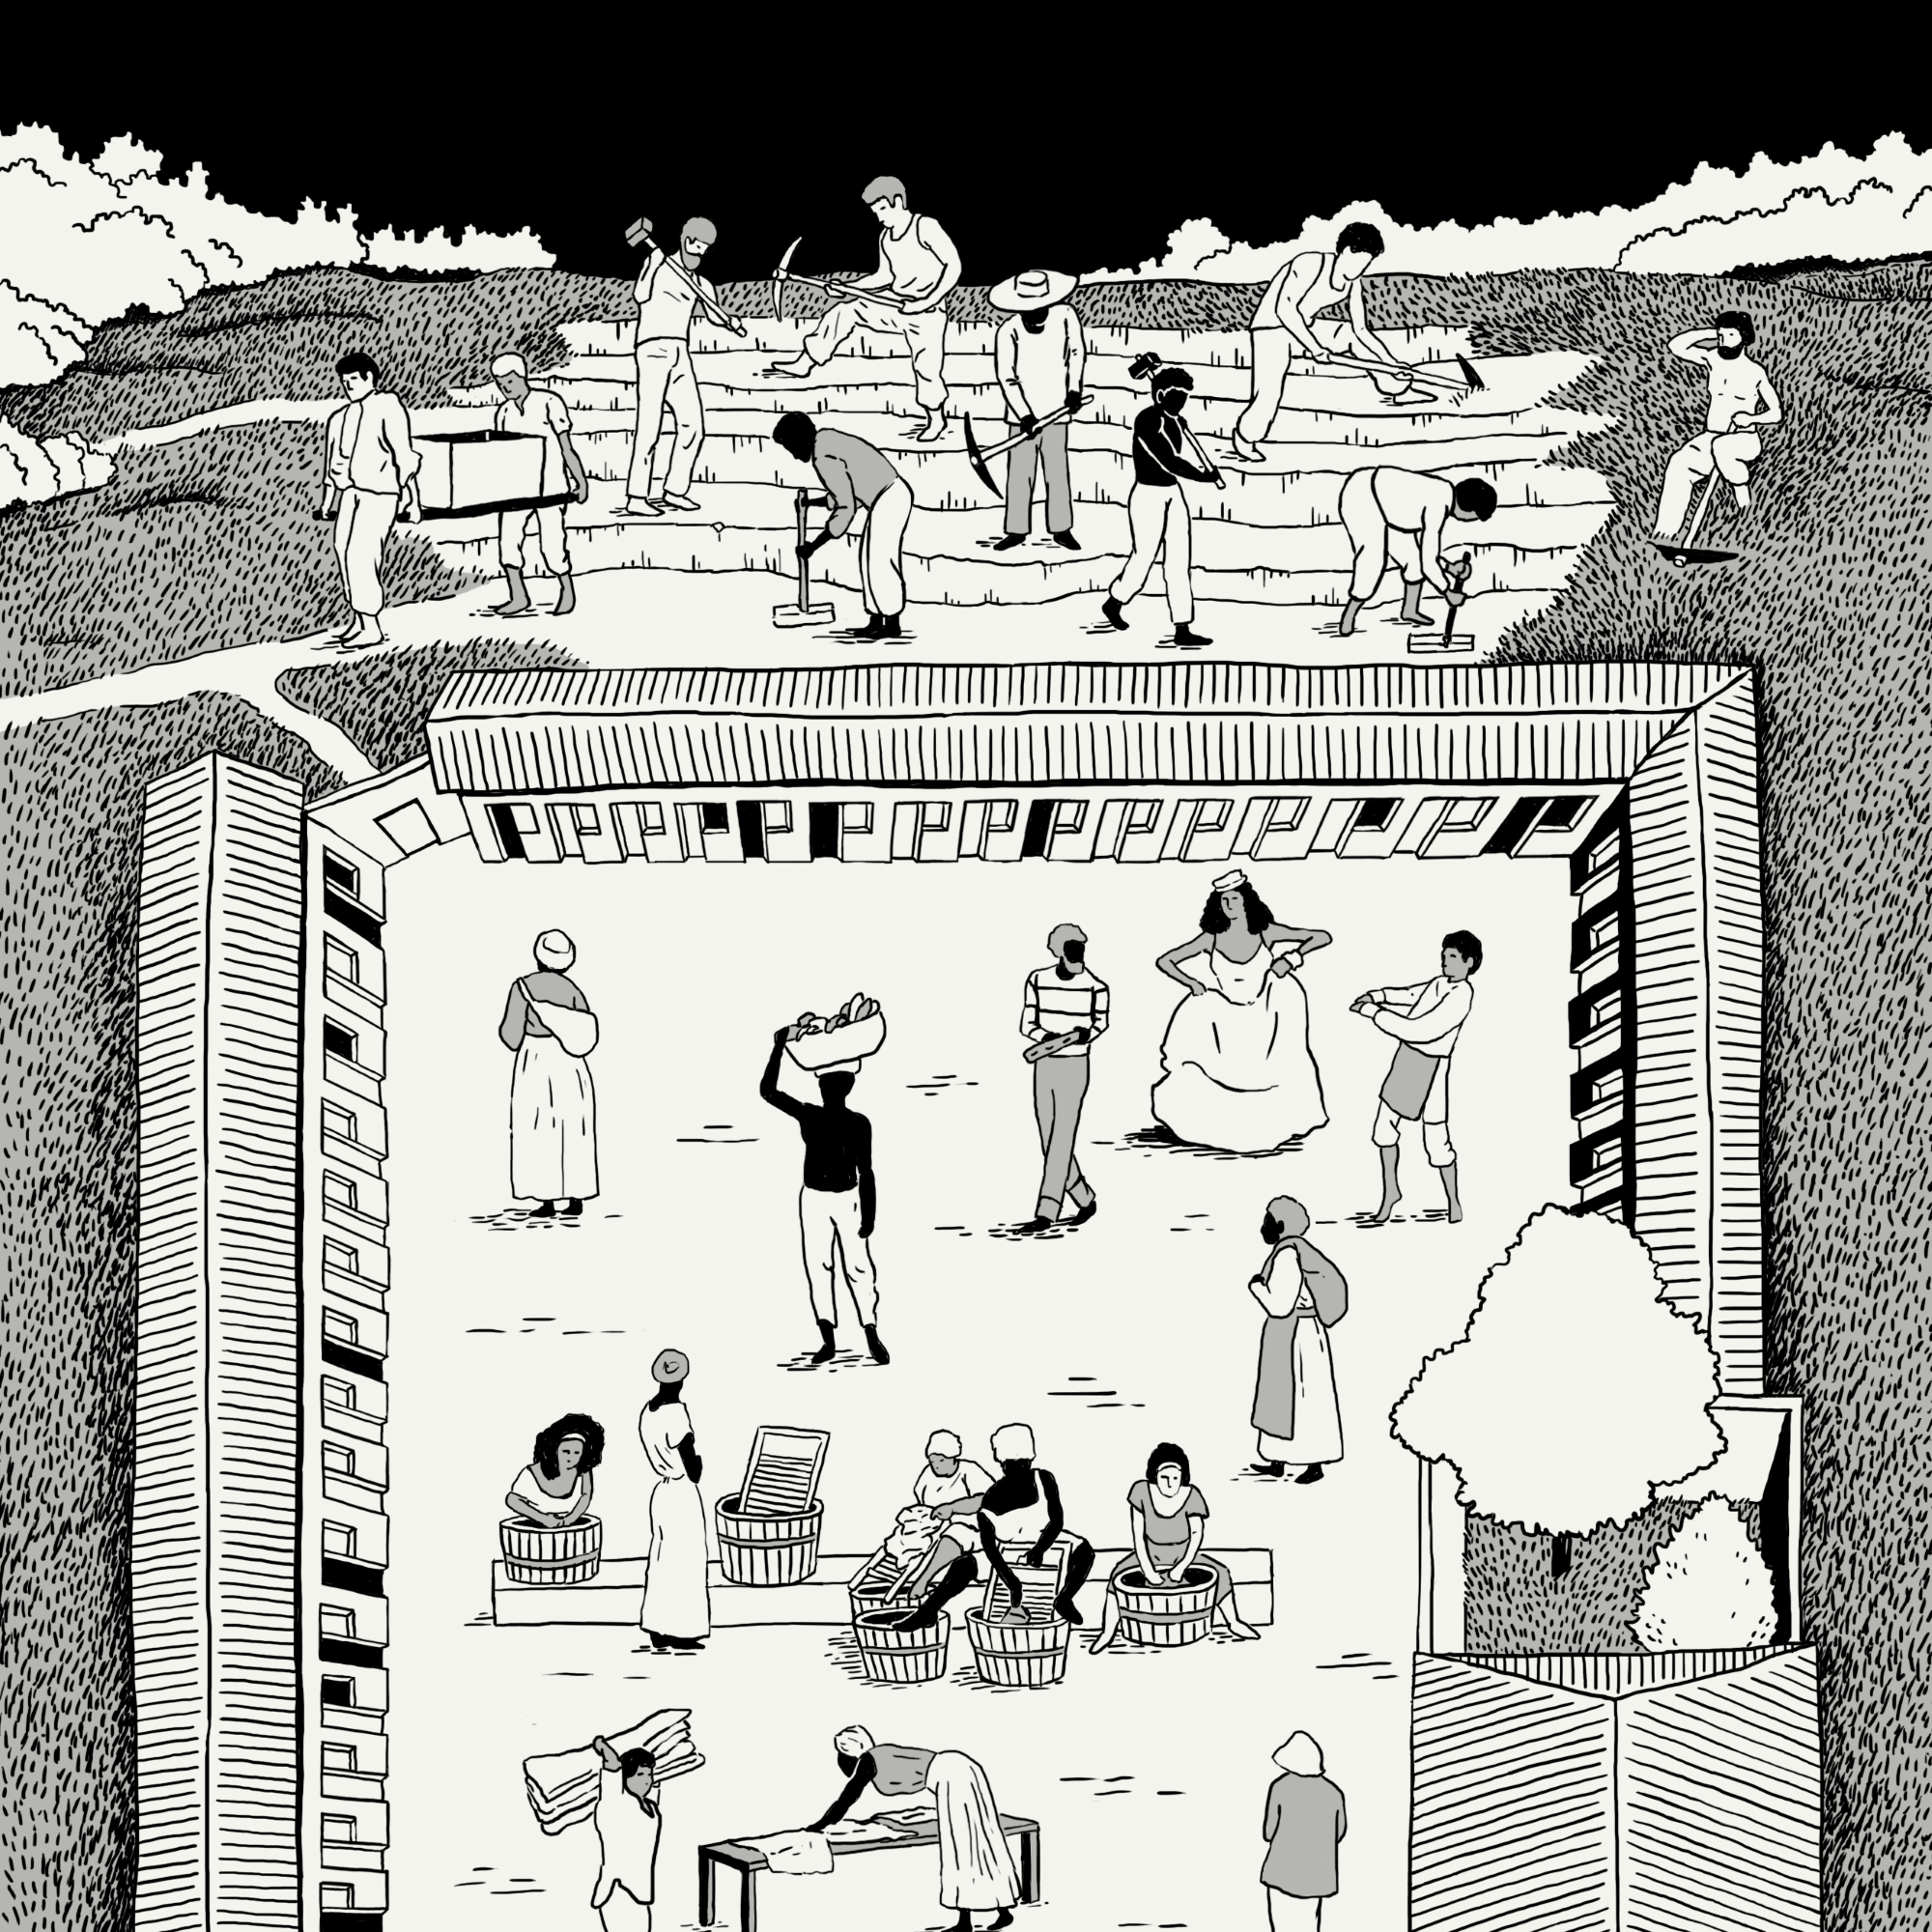 Ilustração de um cortiço carioca inspirado no livro “O Cortiço” de Aluísio Azevedo.